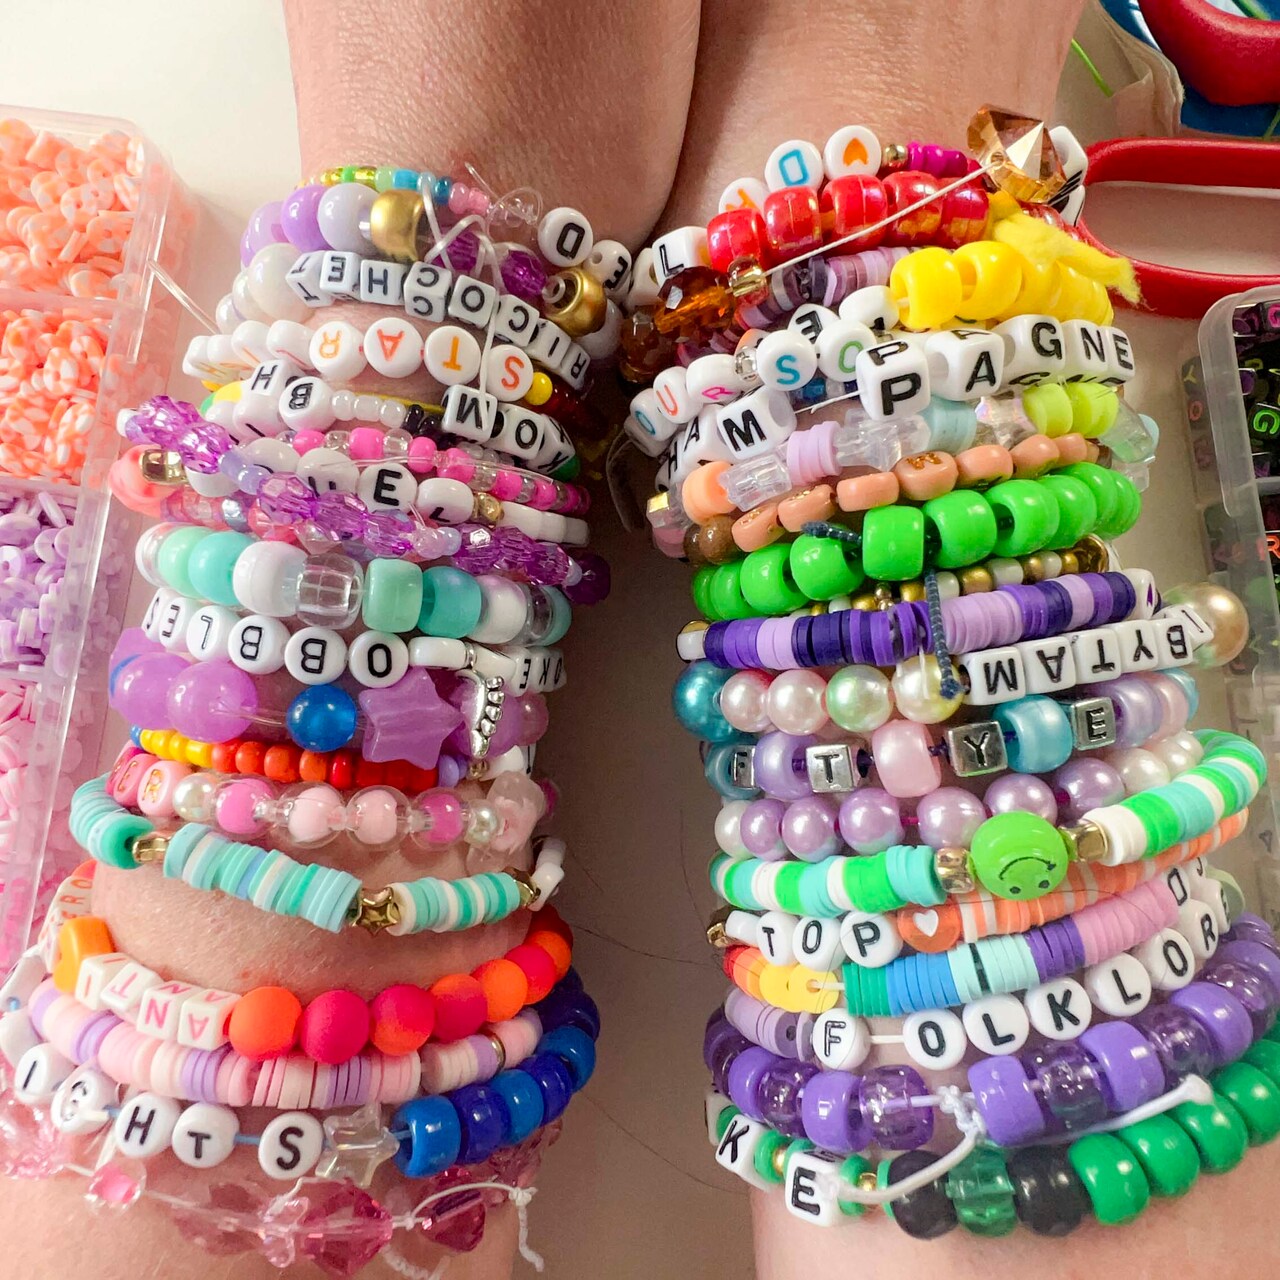  Letter Beads Bulk for Taylor Friendship Bracelets